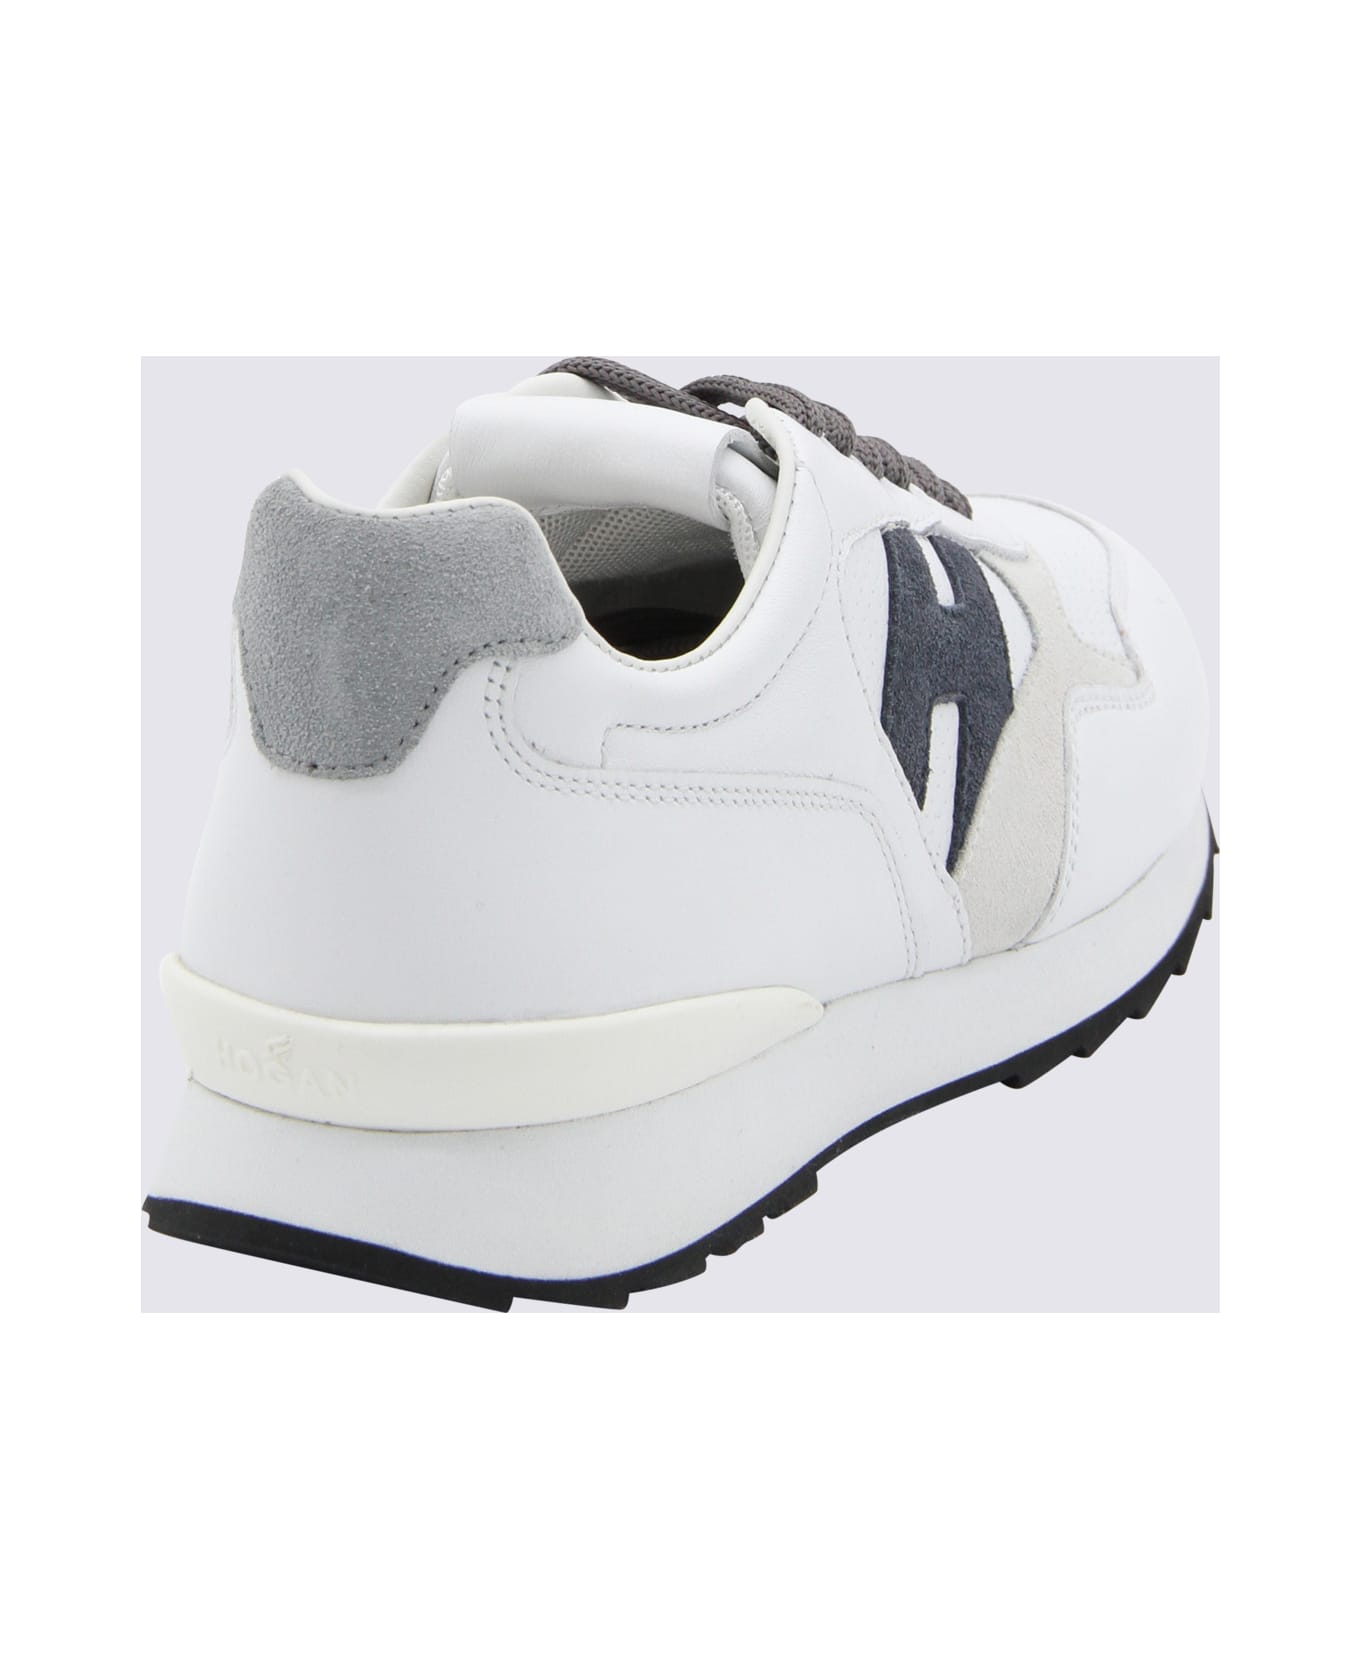 Hogan White Leather R261 Sneakers - White シューズ